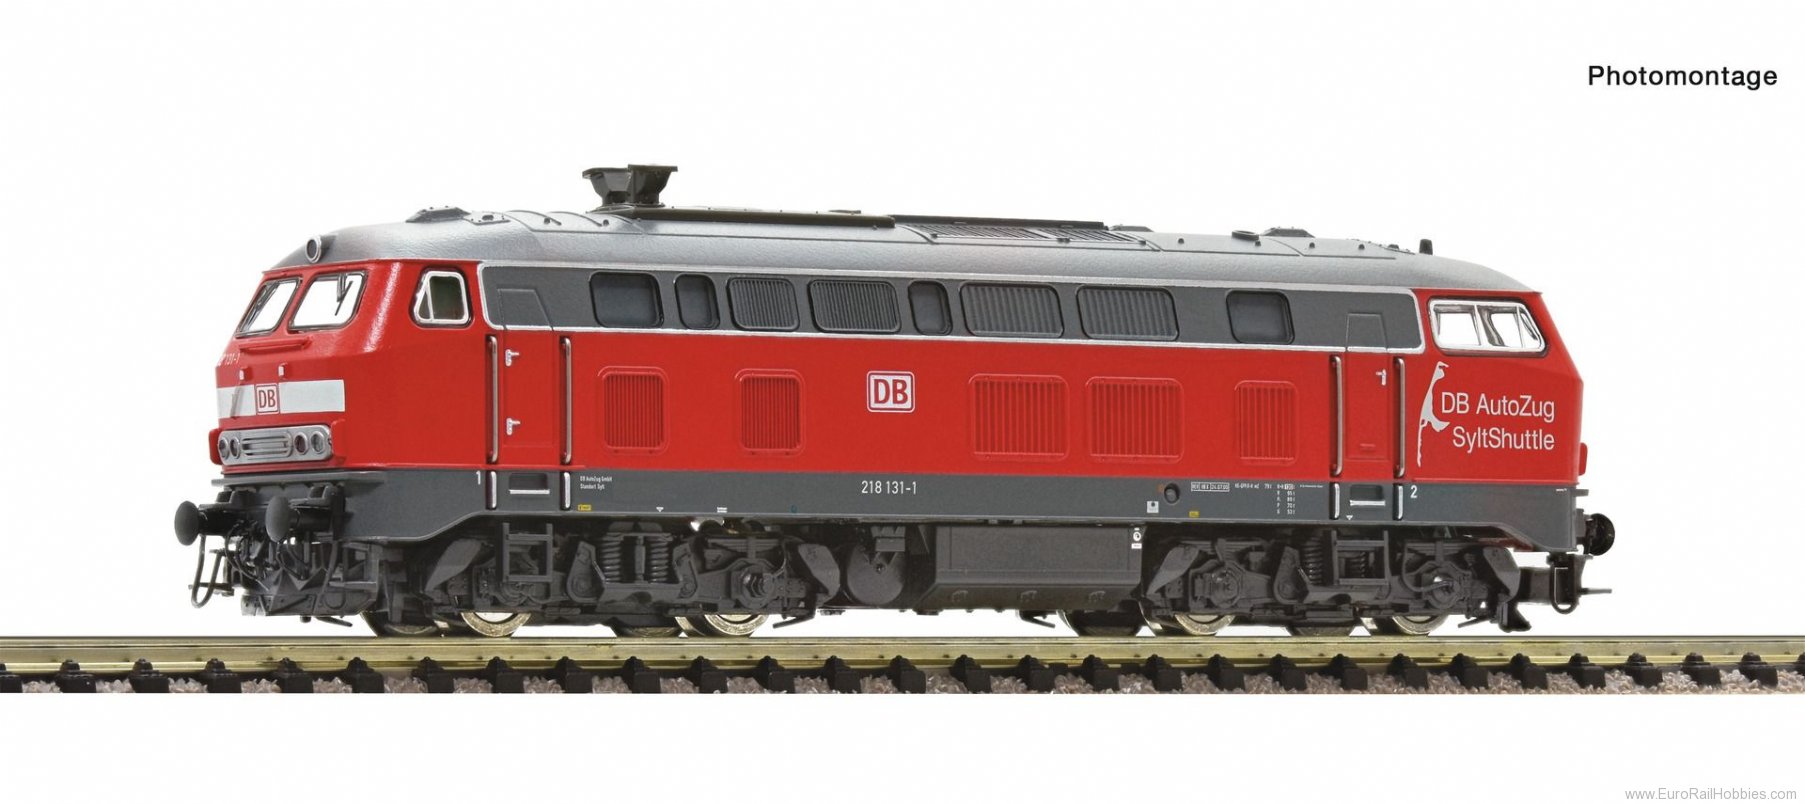 Fleischmann 724222 DB AG 218 131-1 Diesel locomotive